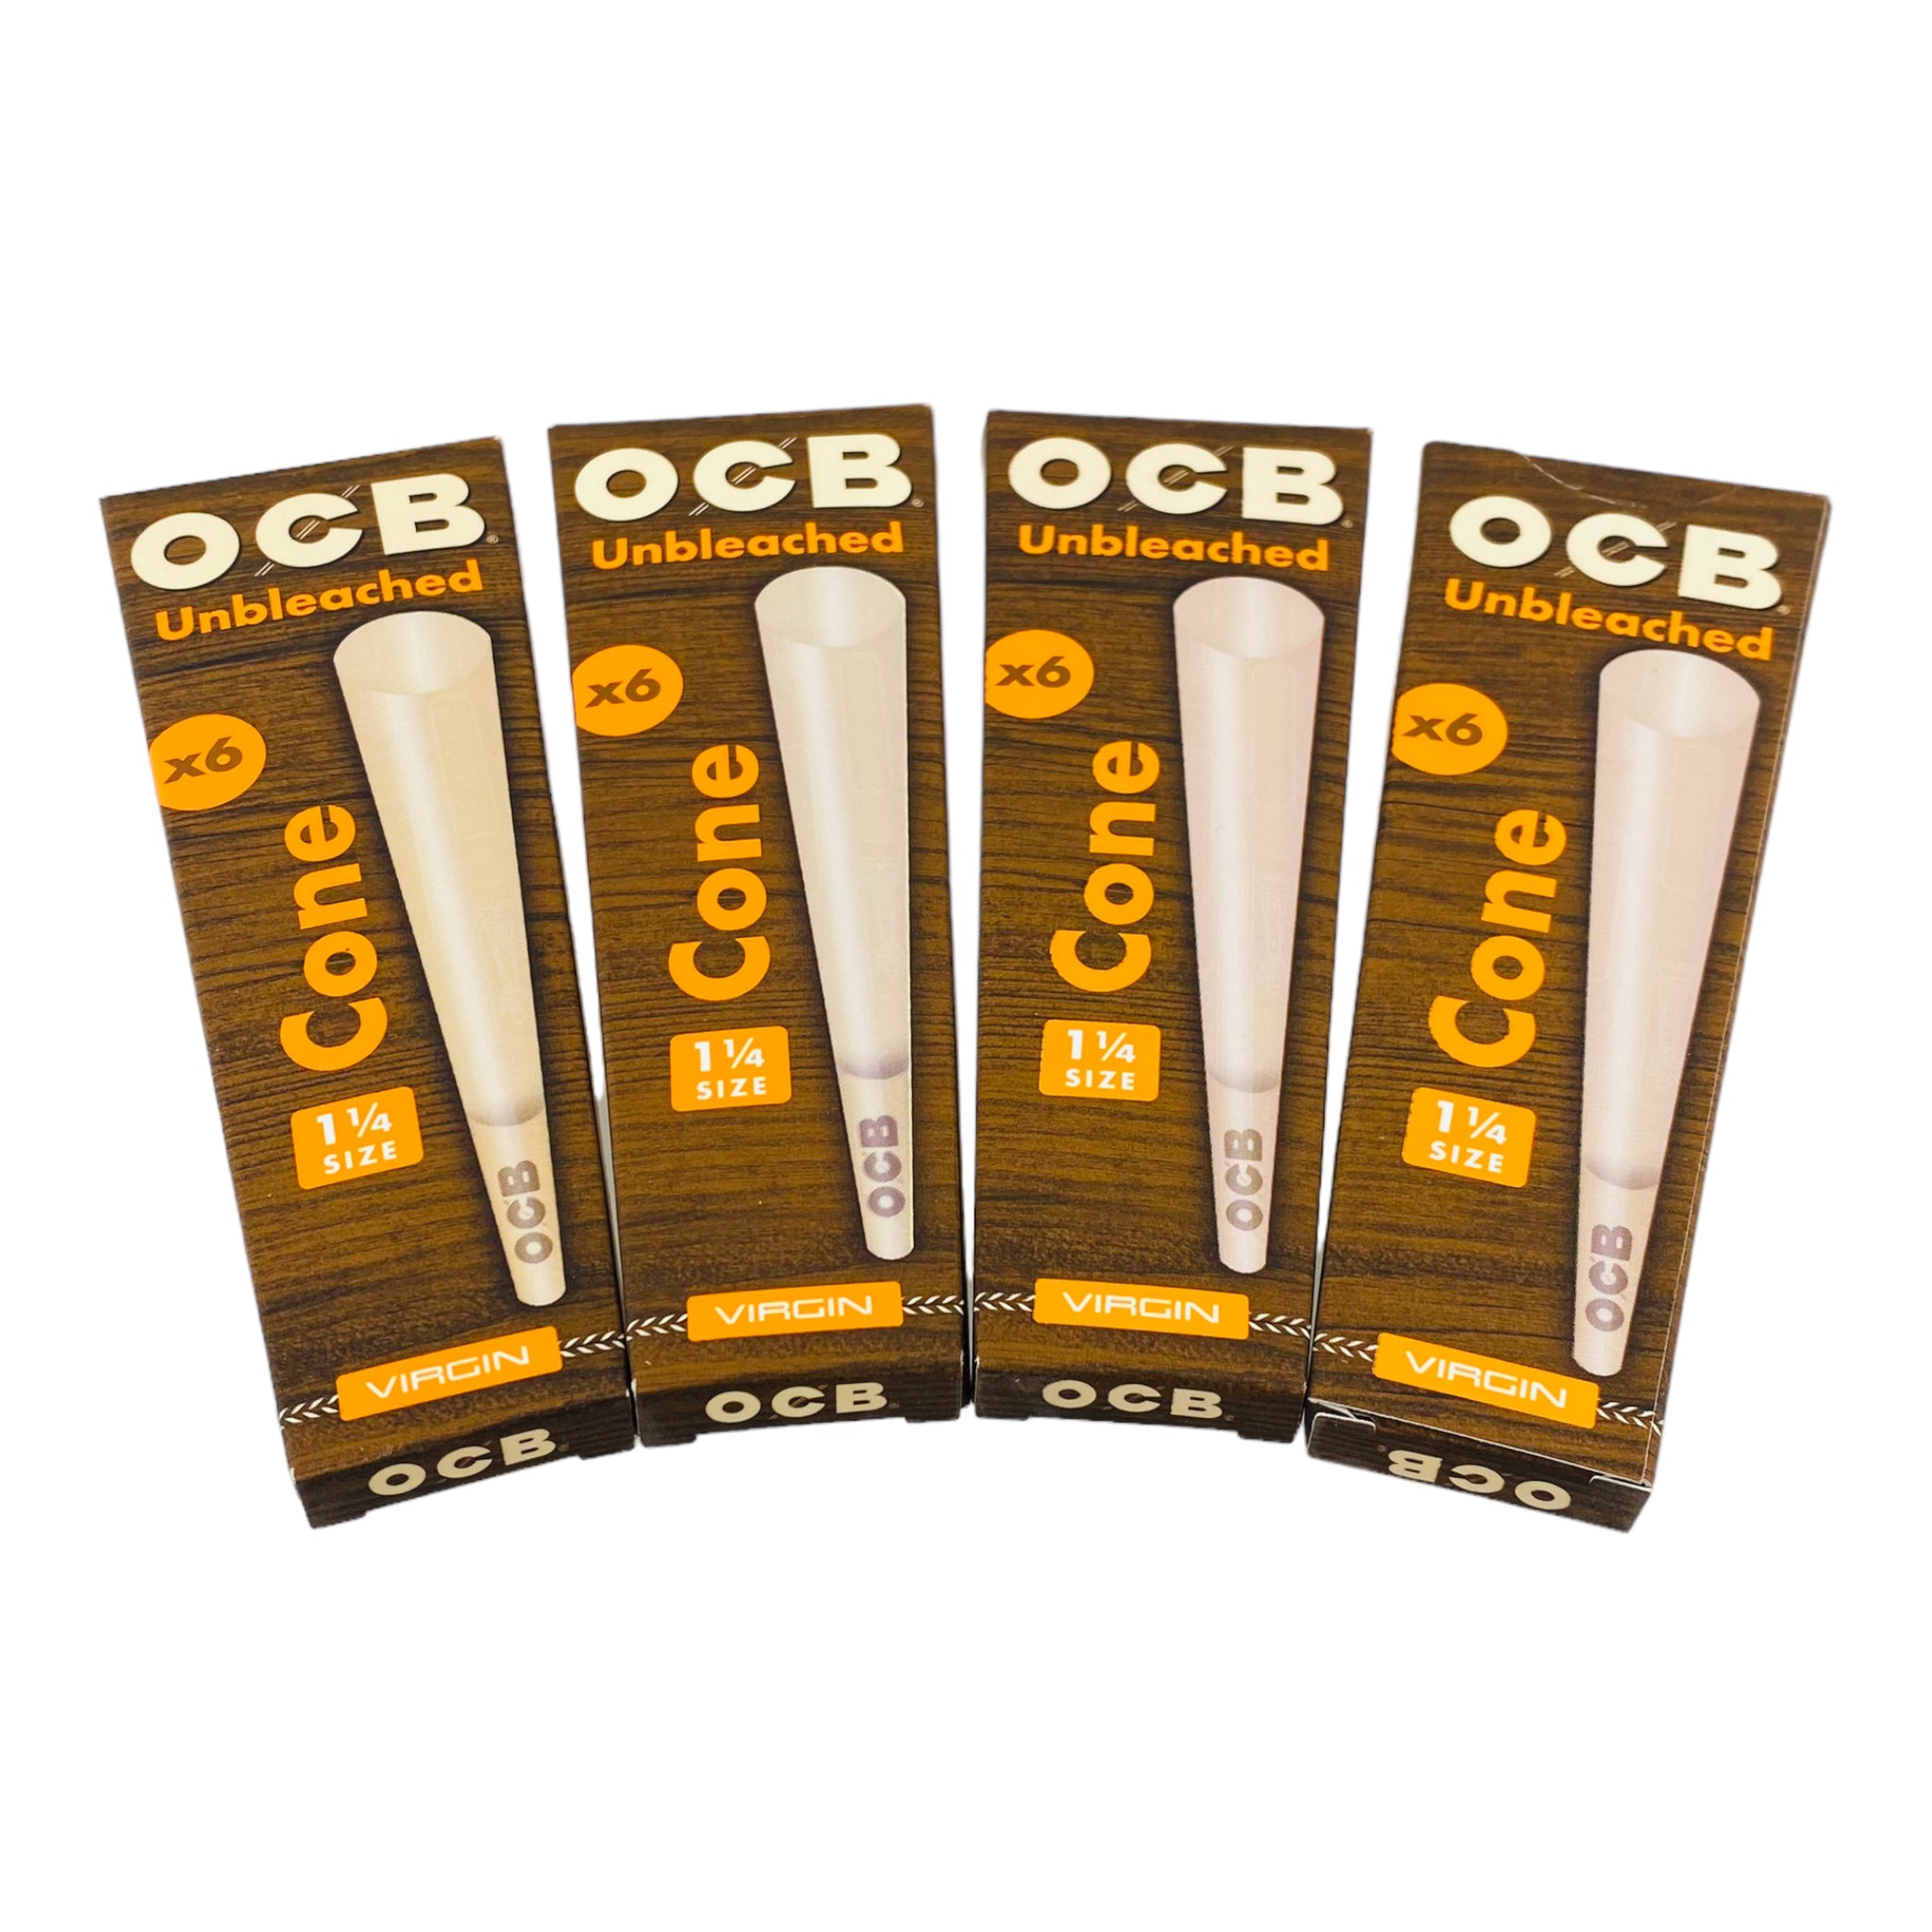 OCB 1-1/4 Unbleached Cones